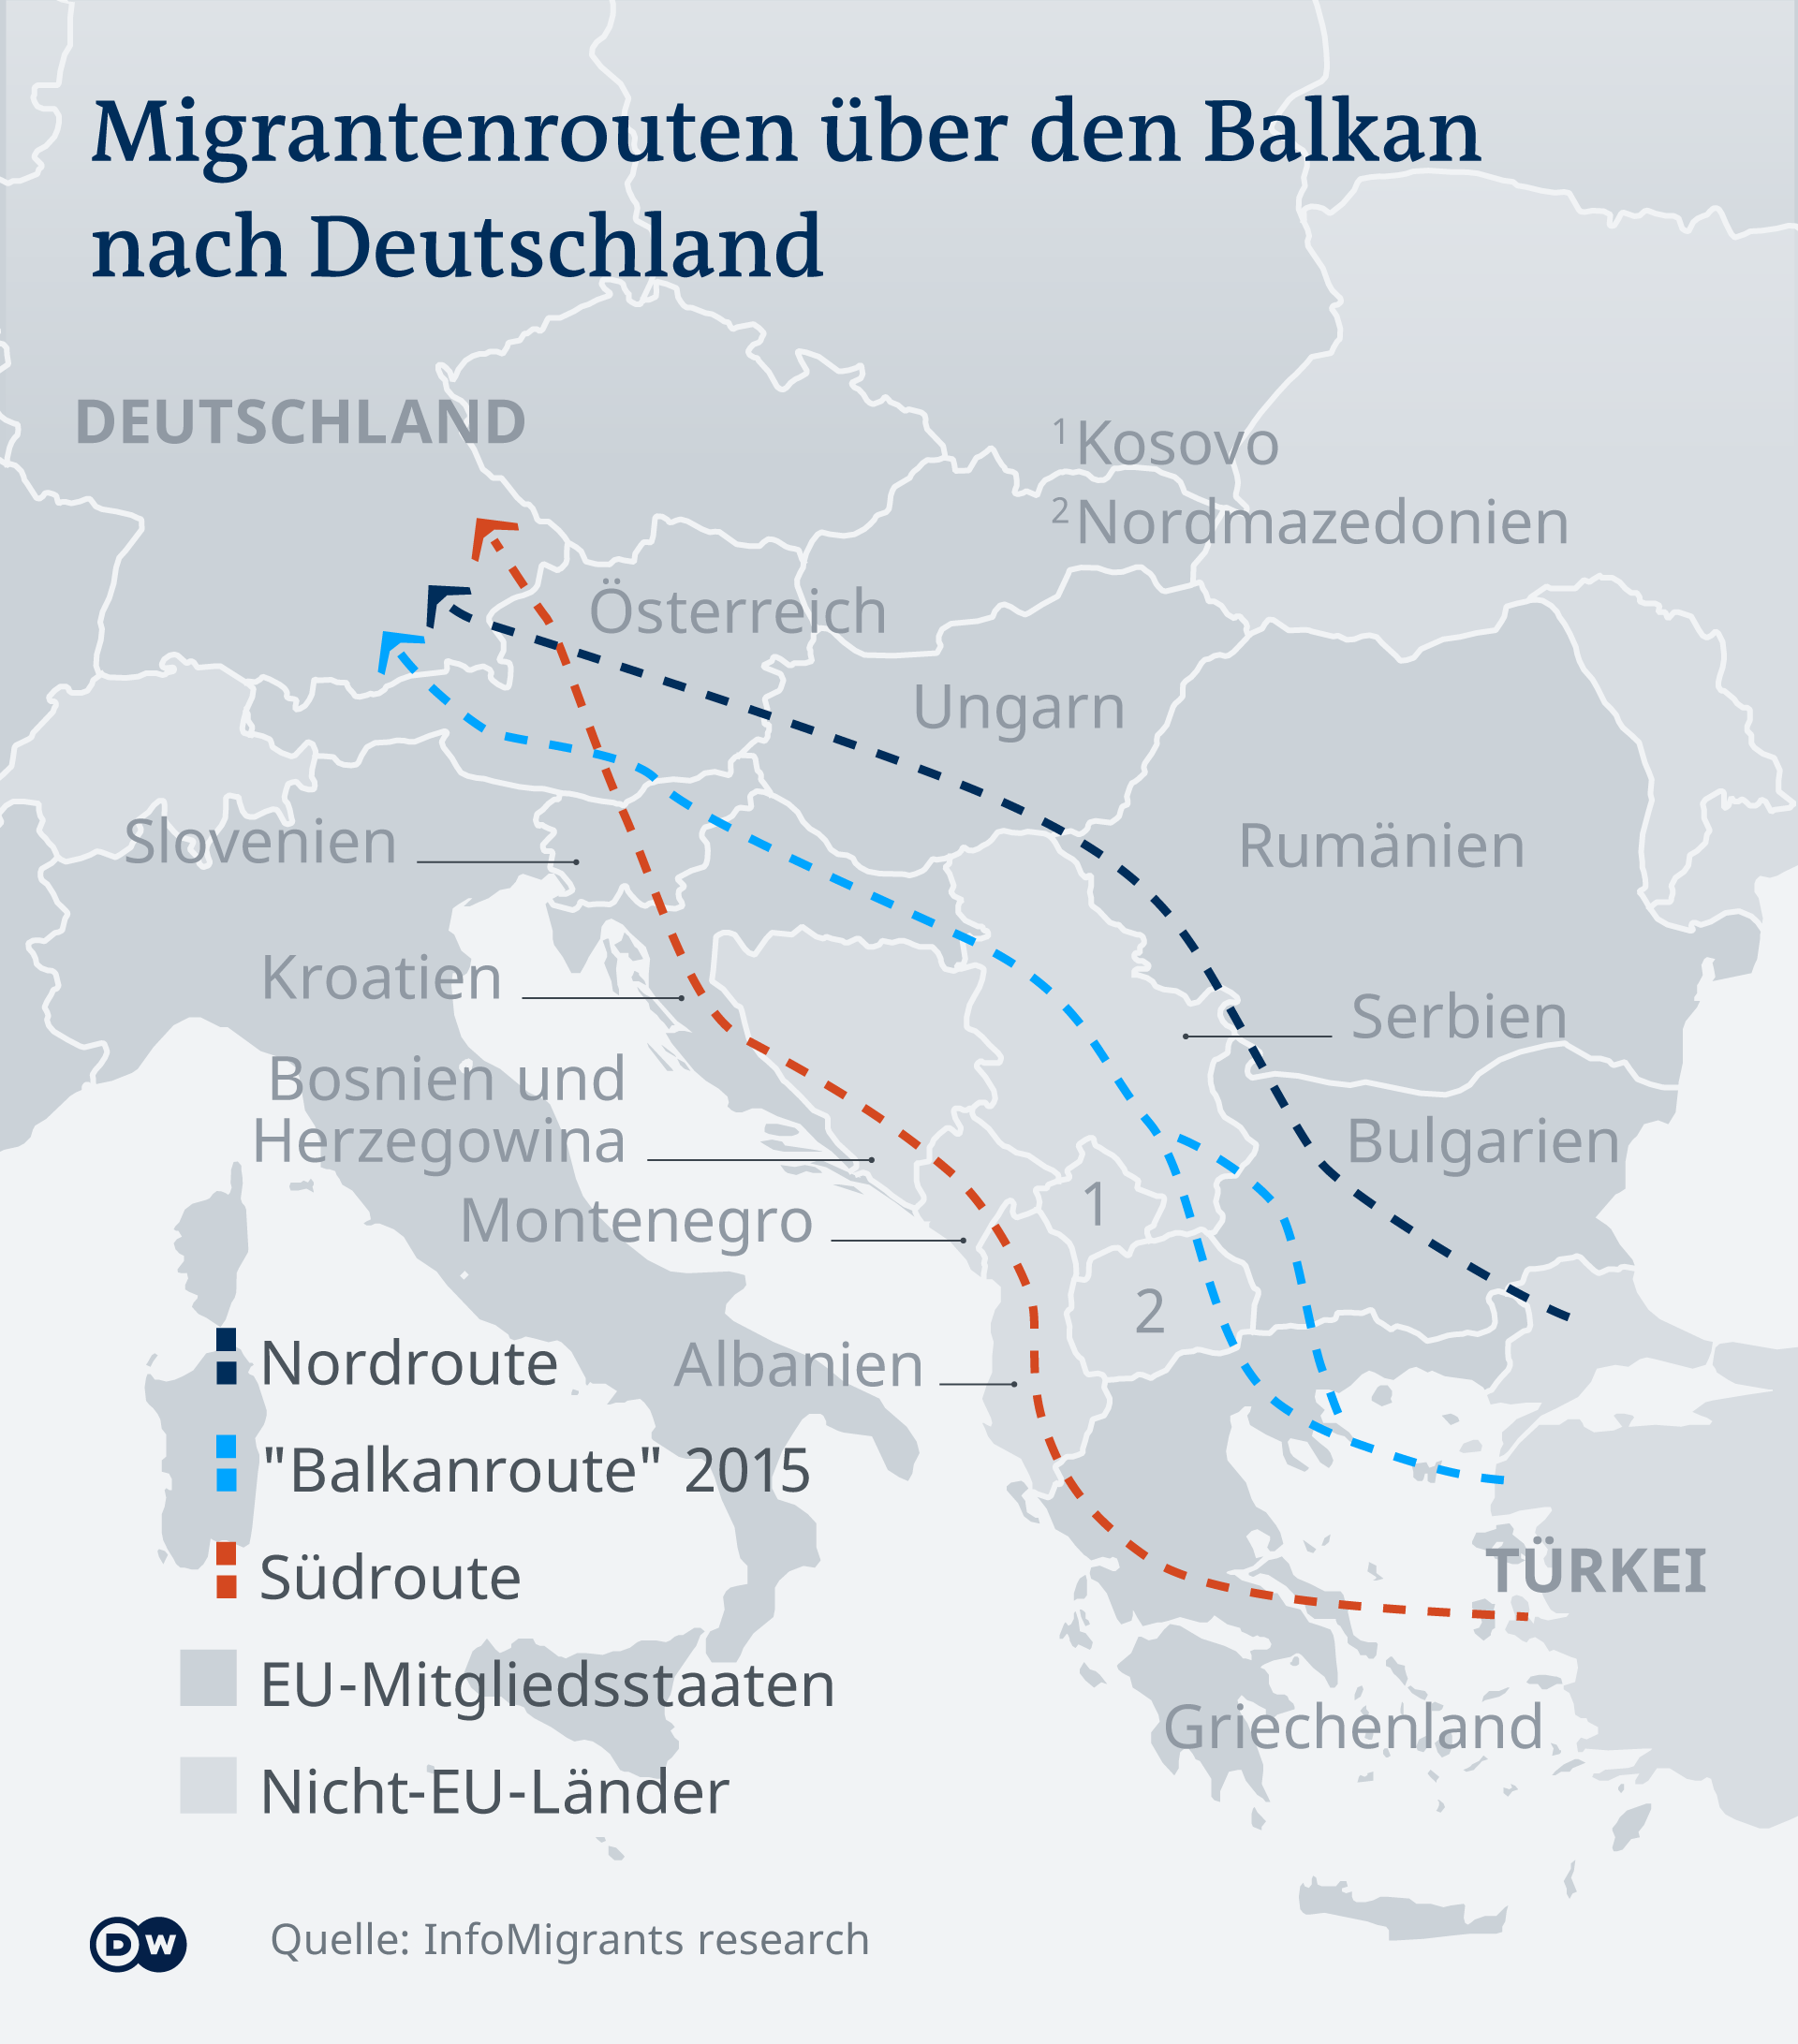 Auf der Balkan-Route über Griechenland, Nordmazedonien, Serbien, Bosnien, Kroatien, und Ungarn kommen derzeit die meisten Migranten und Asylsuchenden. Foto: DW